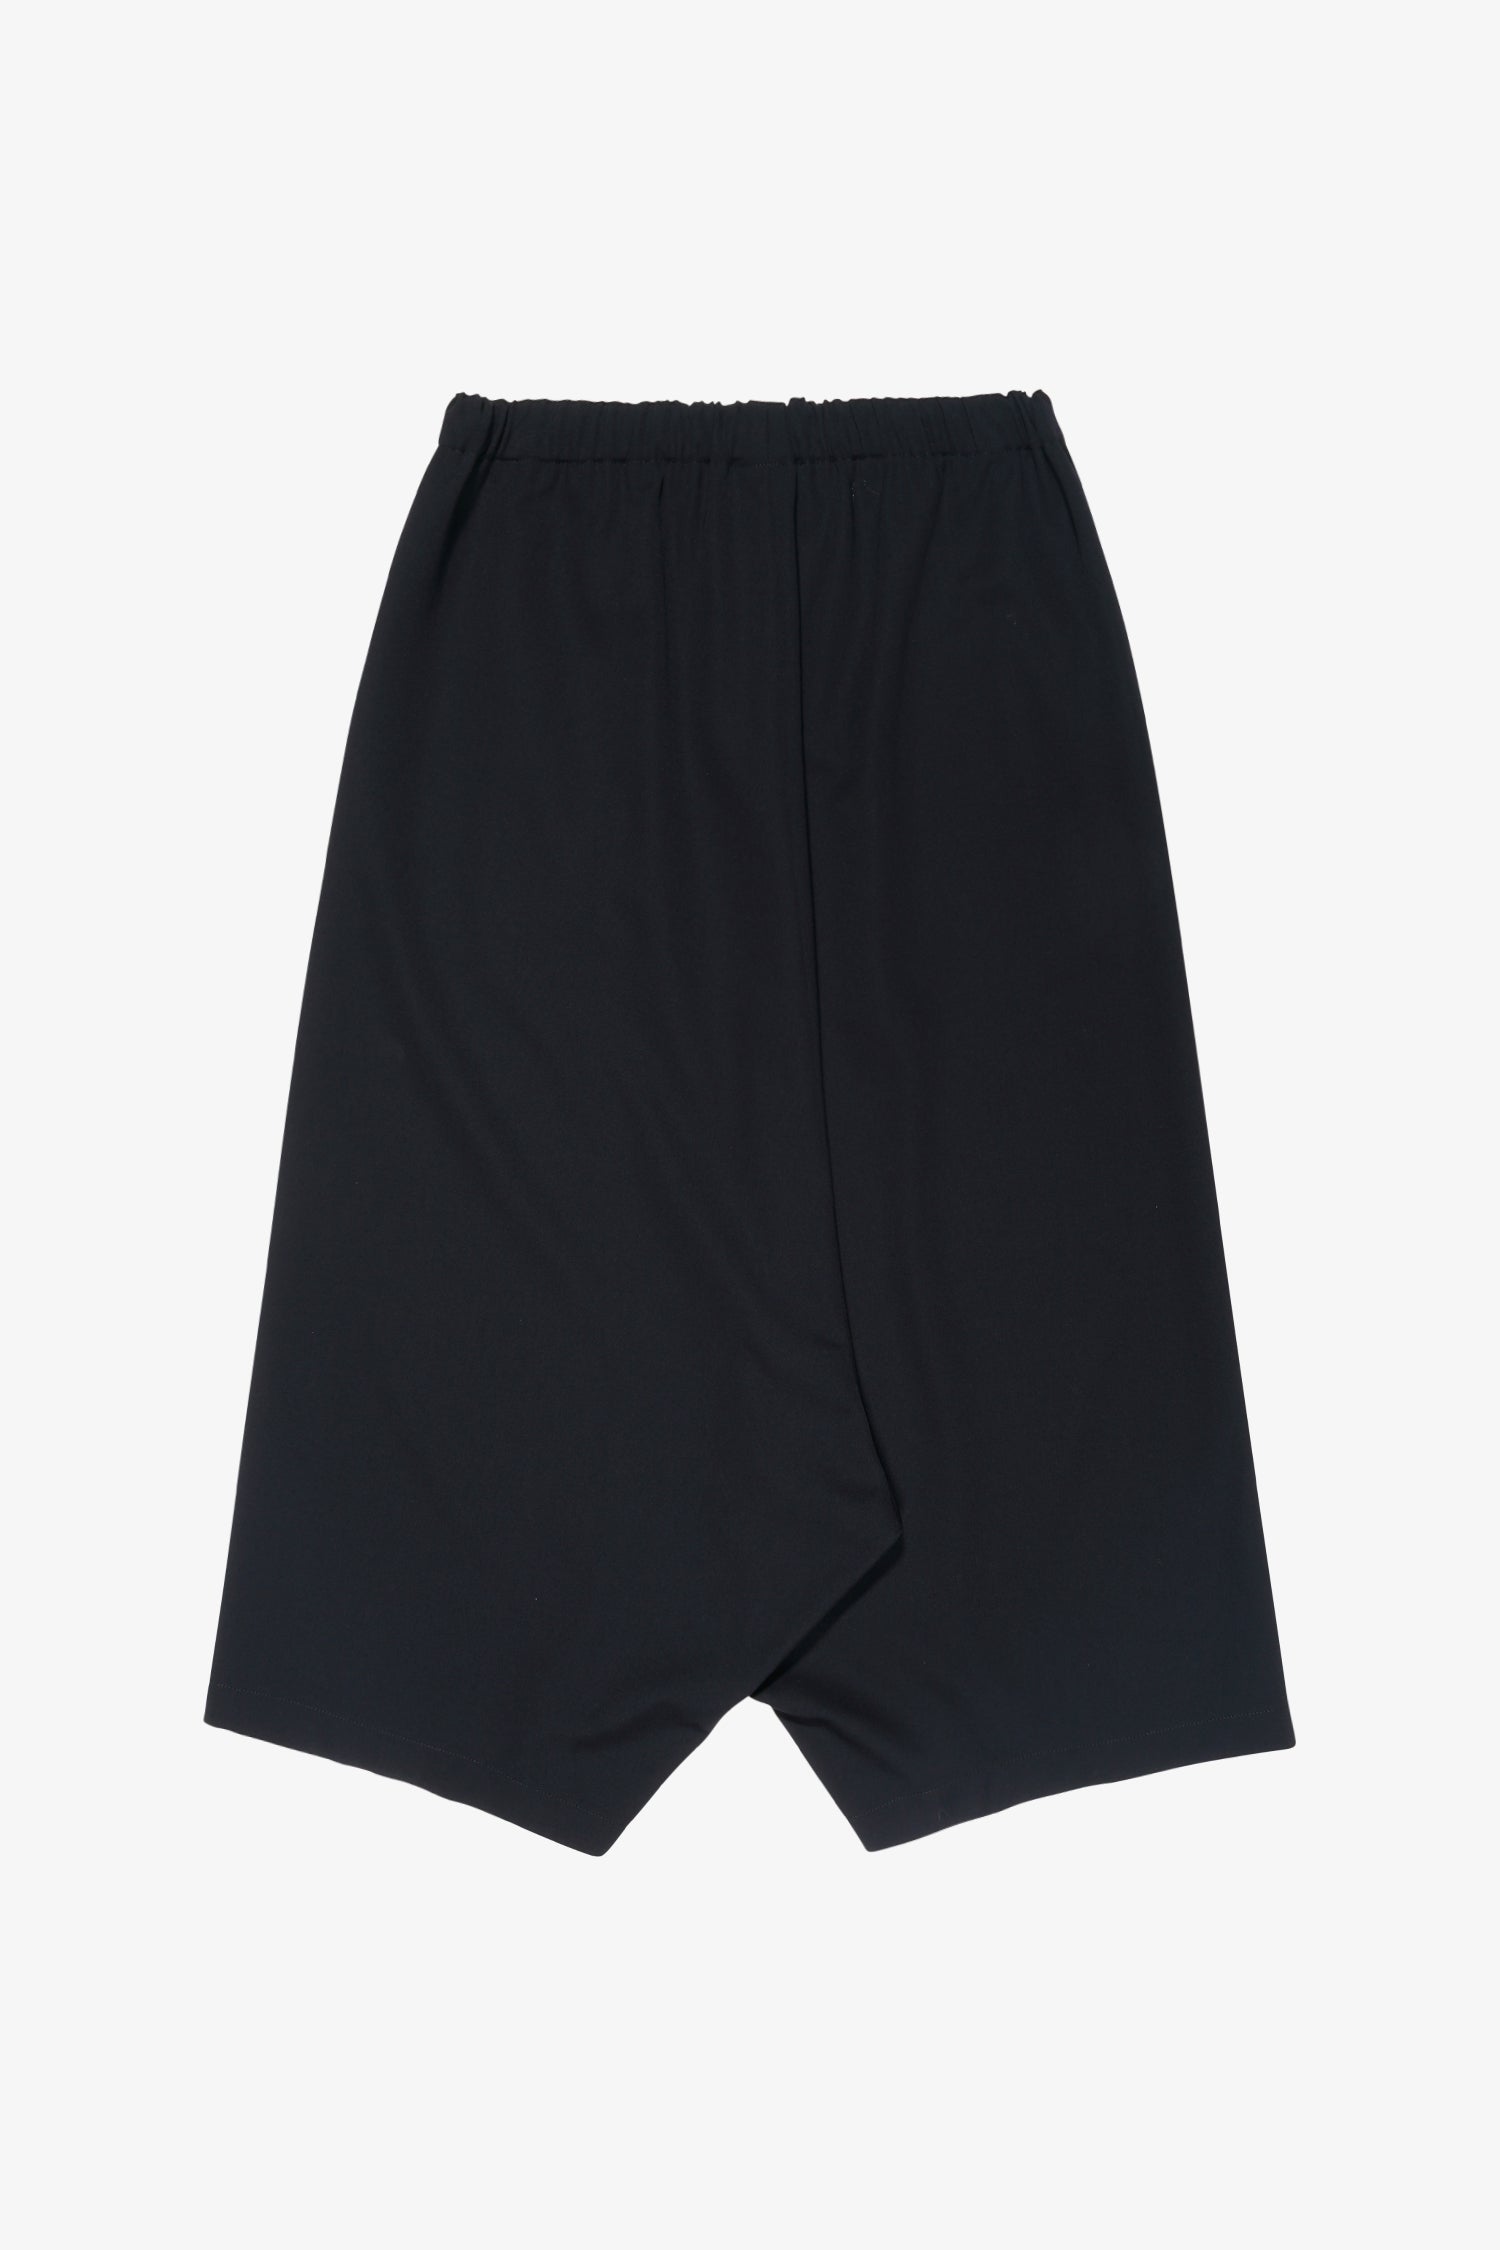 Selectshop FRAME - COMME DES GARÇONS COMME DES GARÇONS Drop- Crotch Trousers Bottoms Dubai